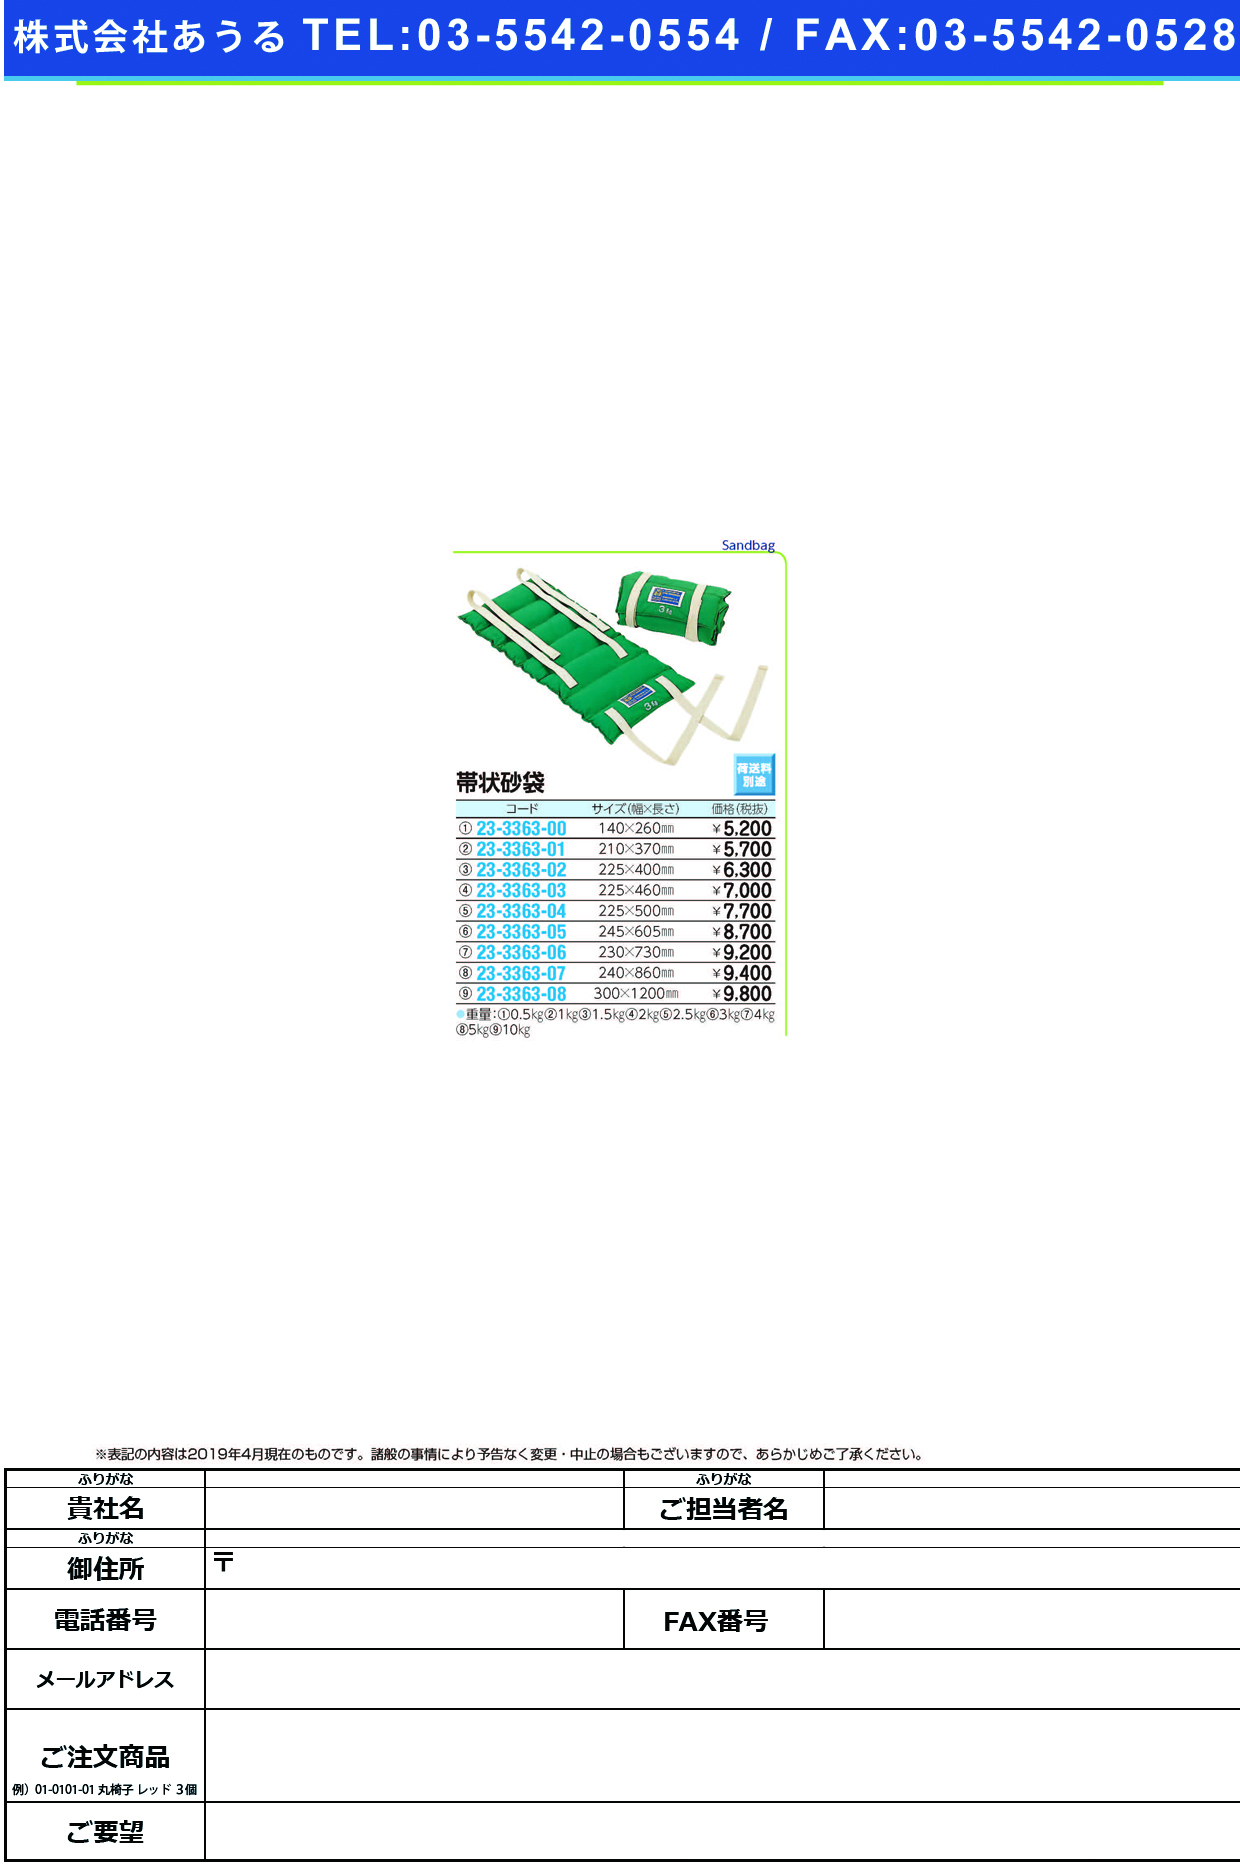 (23-3363-00)帯状砂袋 R-526(0.5KG) ｵﾋﾞｼﾞｮｳｽﾅﾌﾞｸﾛ【1個単位】【2019年カタログ商品】